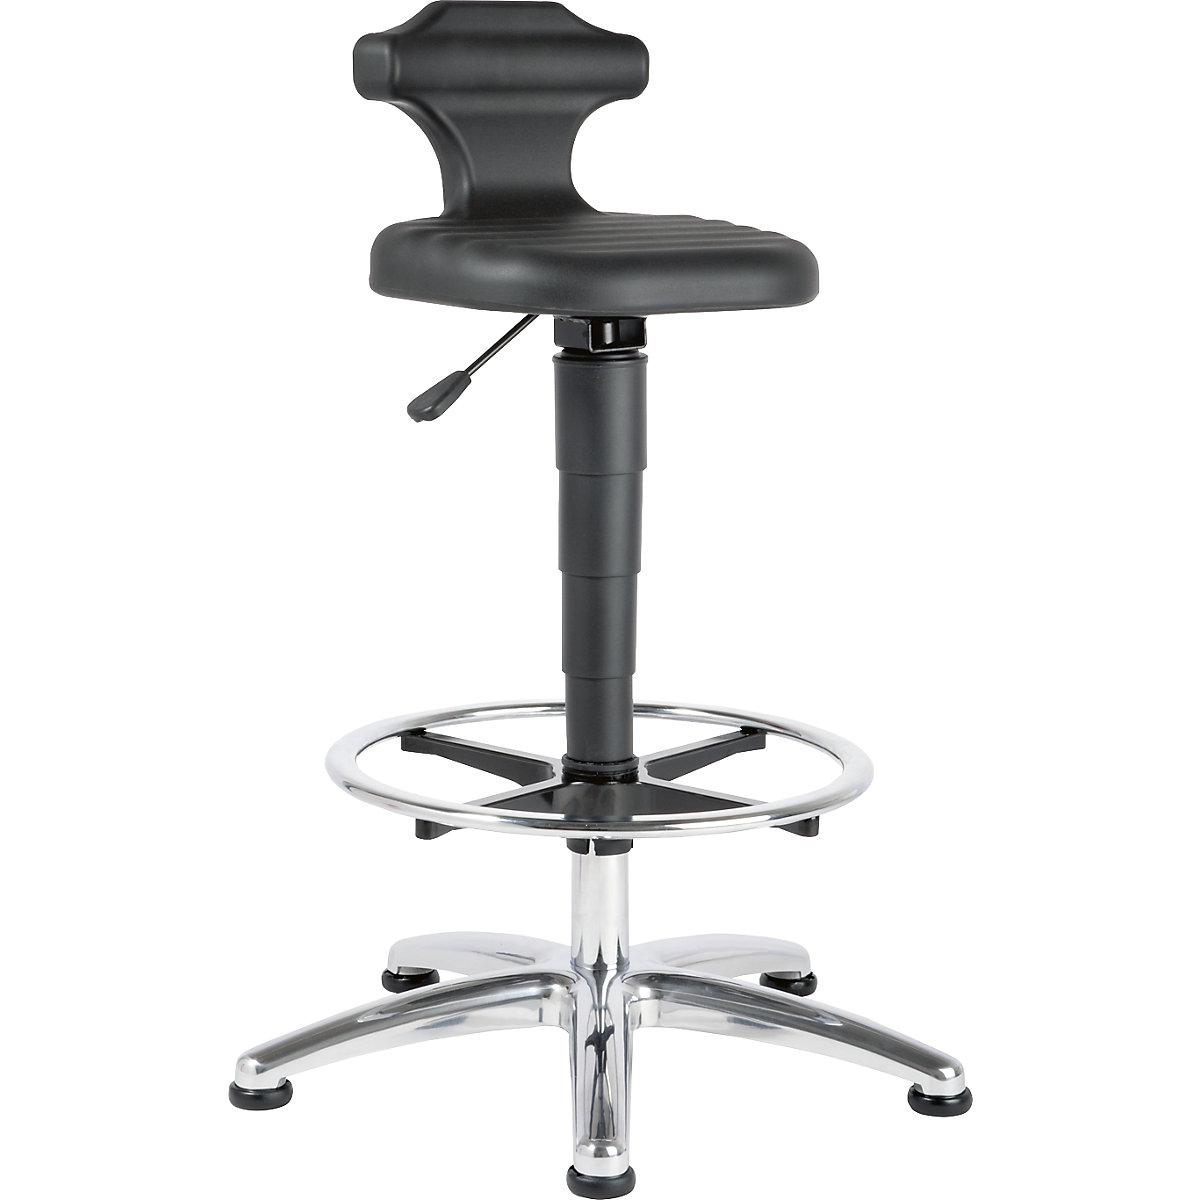 Sedák pro práci vestoje – bimos, pro laboratoř, rozsah přestavování výšky 510 – 780 mm, s nožním kruhem-1